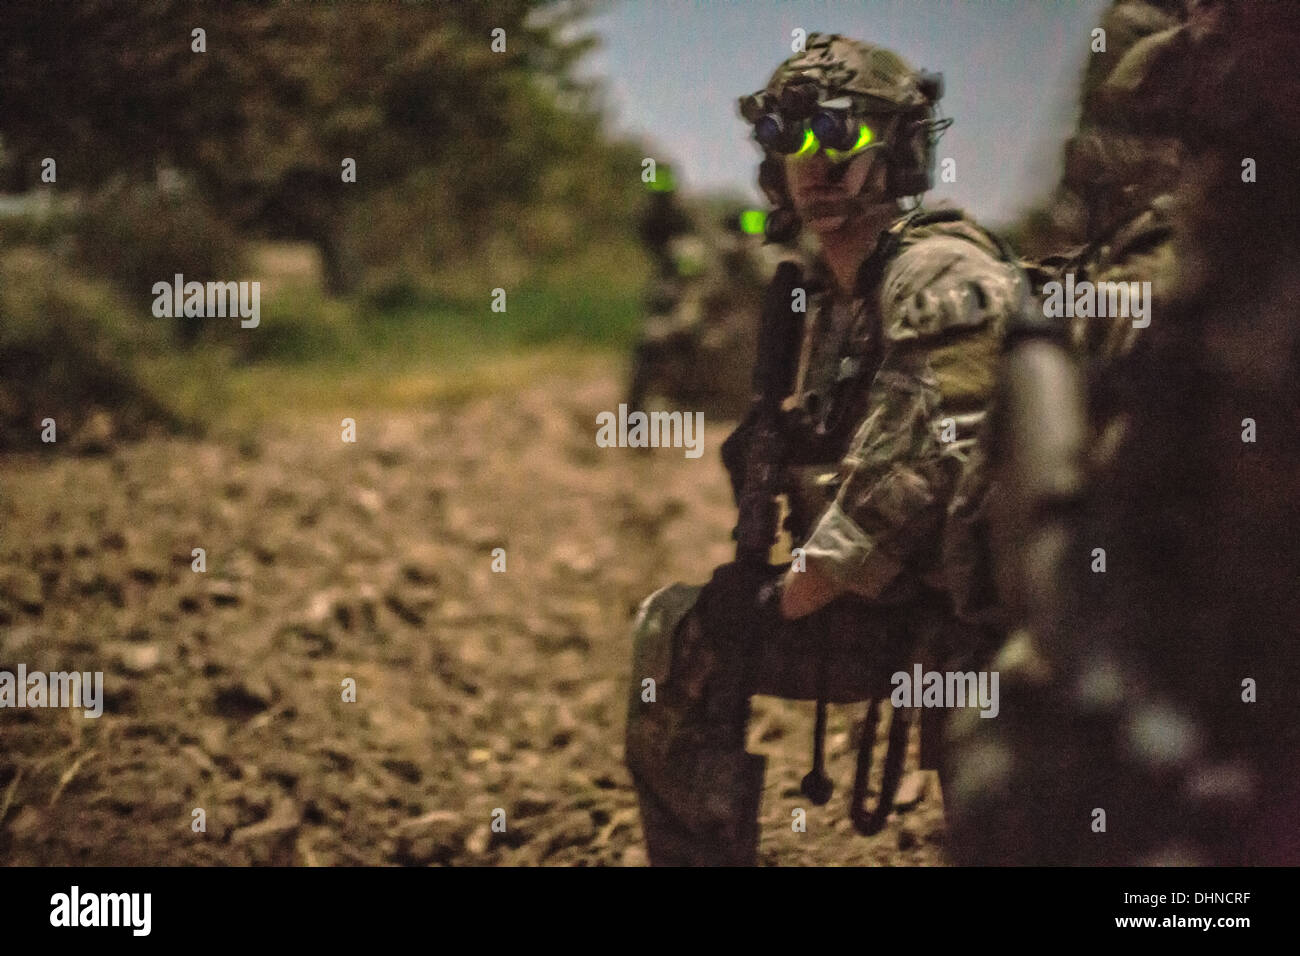 Un soldat de l'armée américaine portant des lunettes de vision de nuit veille au cours d'une opération de recherche de nuit, le 14 octobre 2013 dans la province de Helmand, Afghanistan, le 14 octobre 2013. Les forces afghanes et de la coalition ont arrêté un dispositif explosif de Taliban leader de cellule au cours de l'opération. Banque D'Images